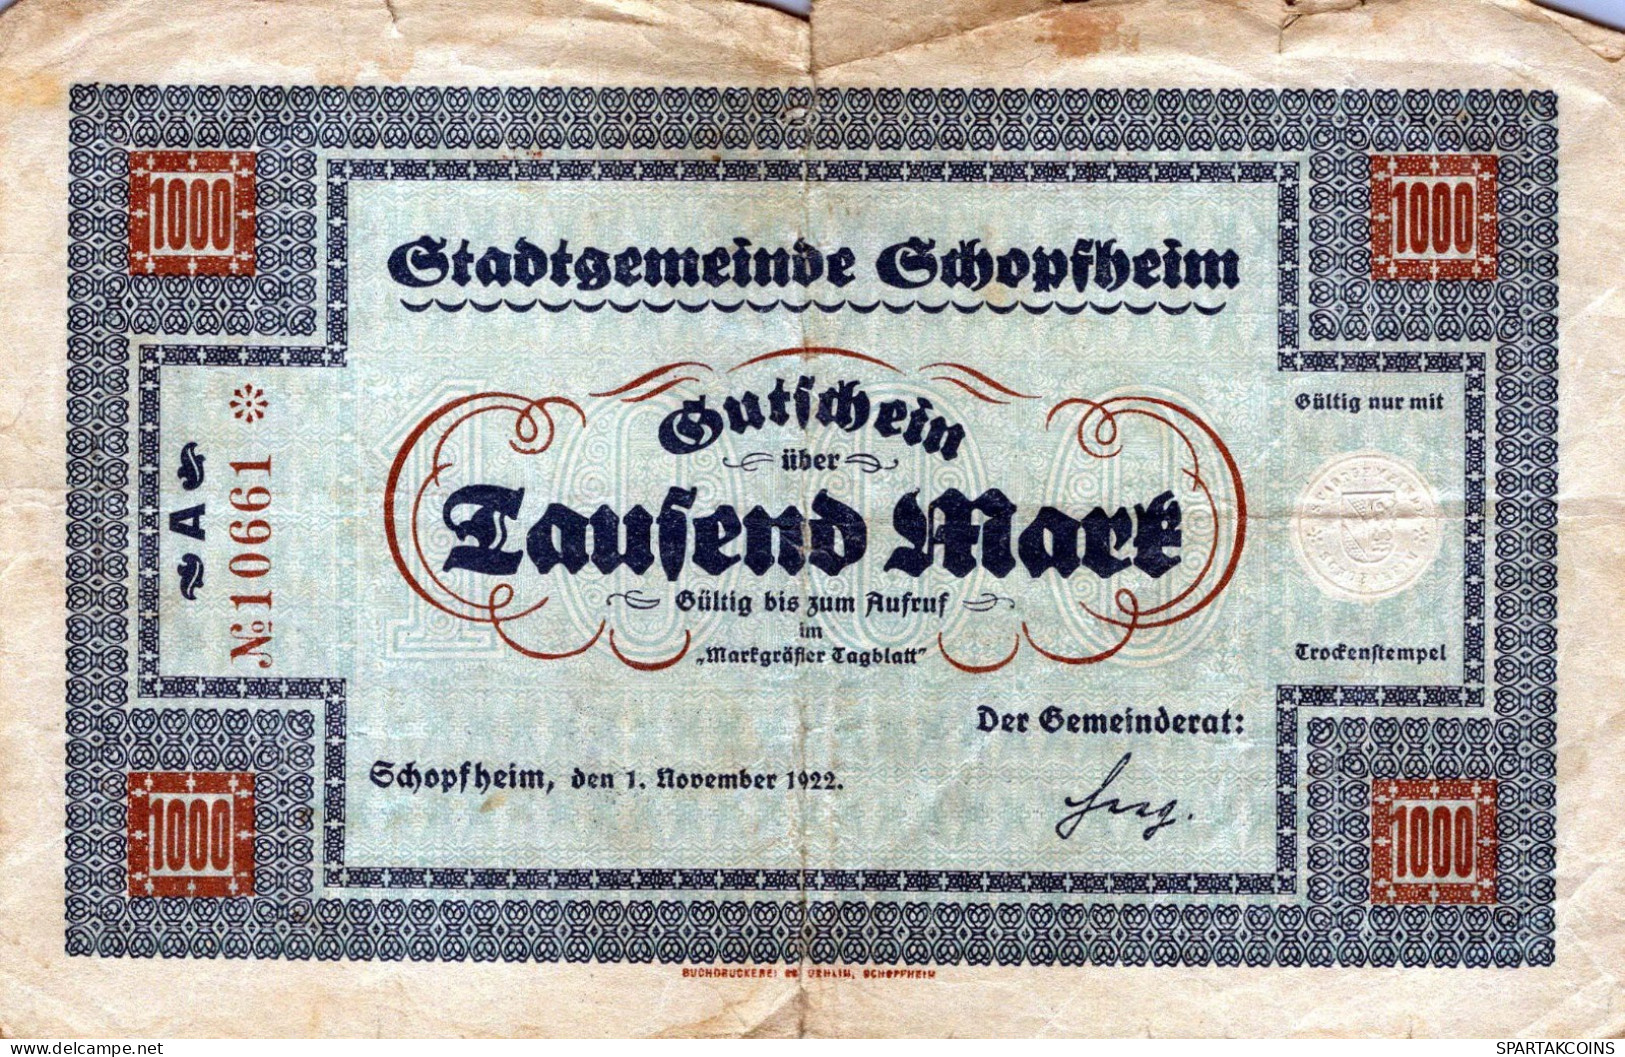 1000 MARK 1922 Stadt SCHOPFHEIM Baden DEUTSCHLAND Notgeld Papiergeld Banknote #PK960 - [11] Local Banknote Issues